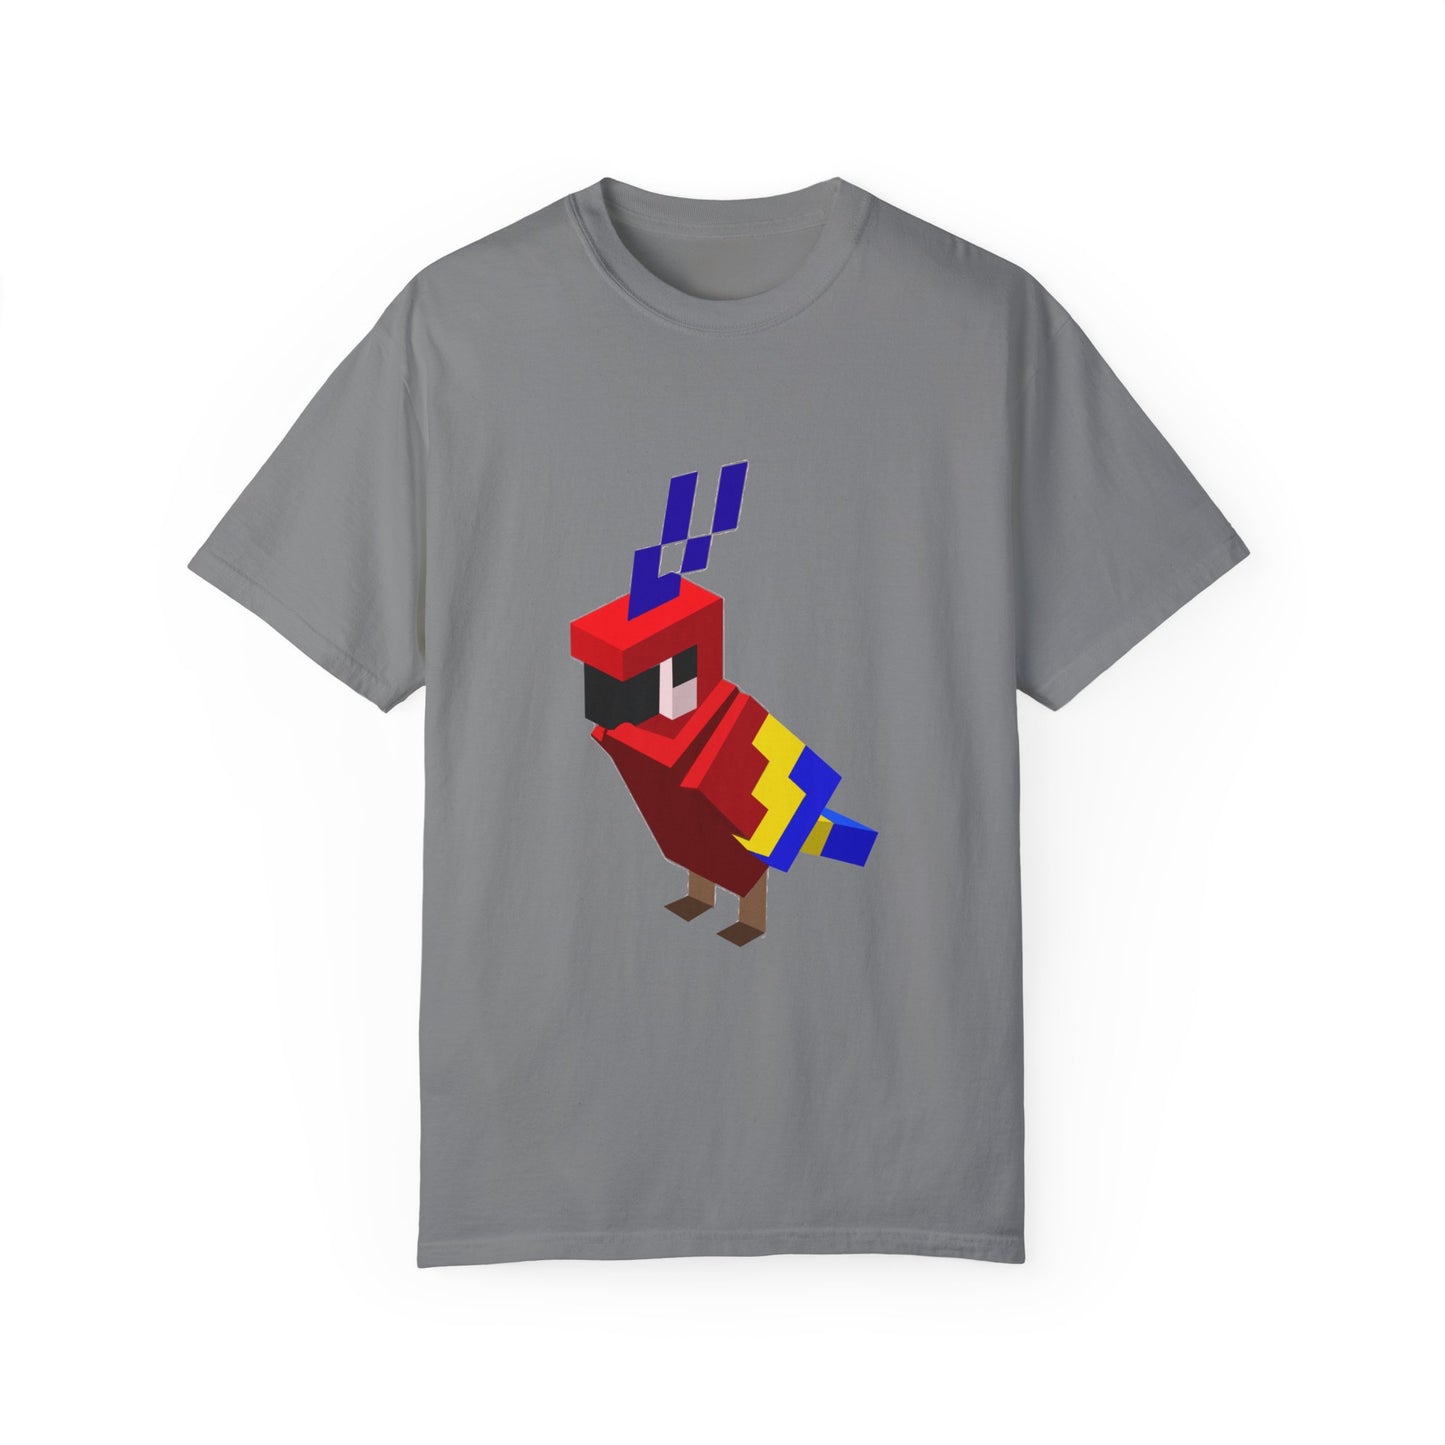 Arcade Parrot T-shirt